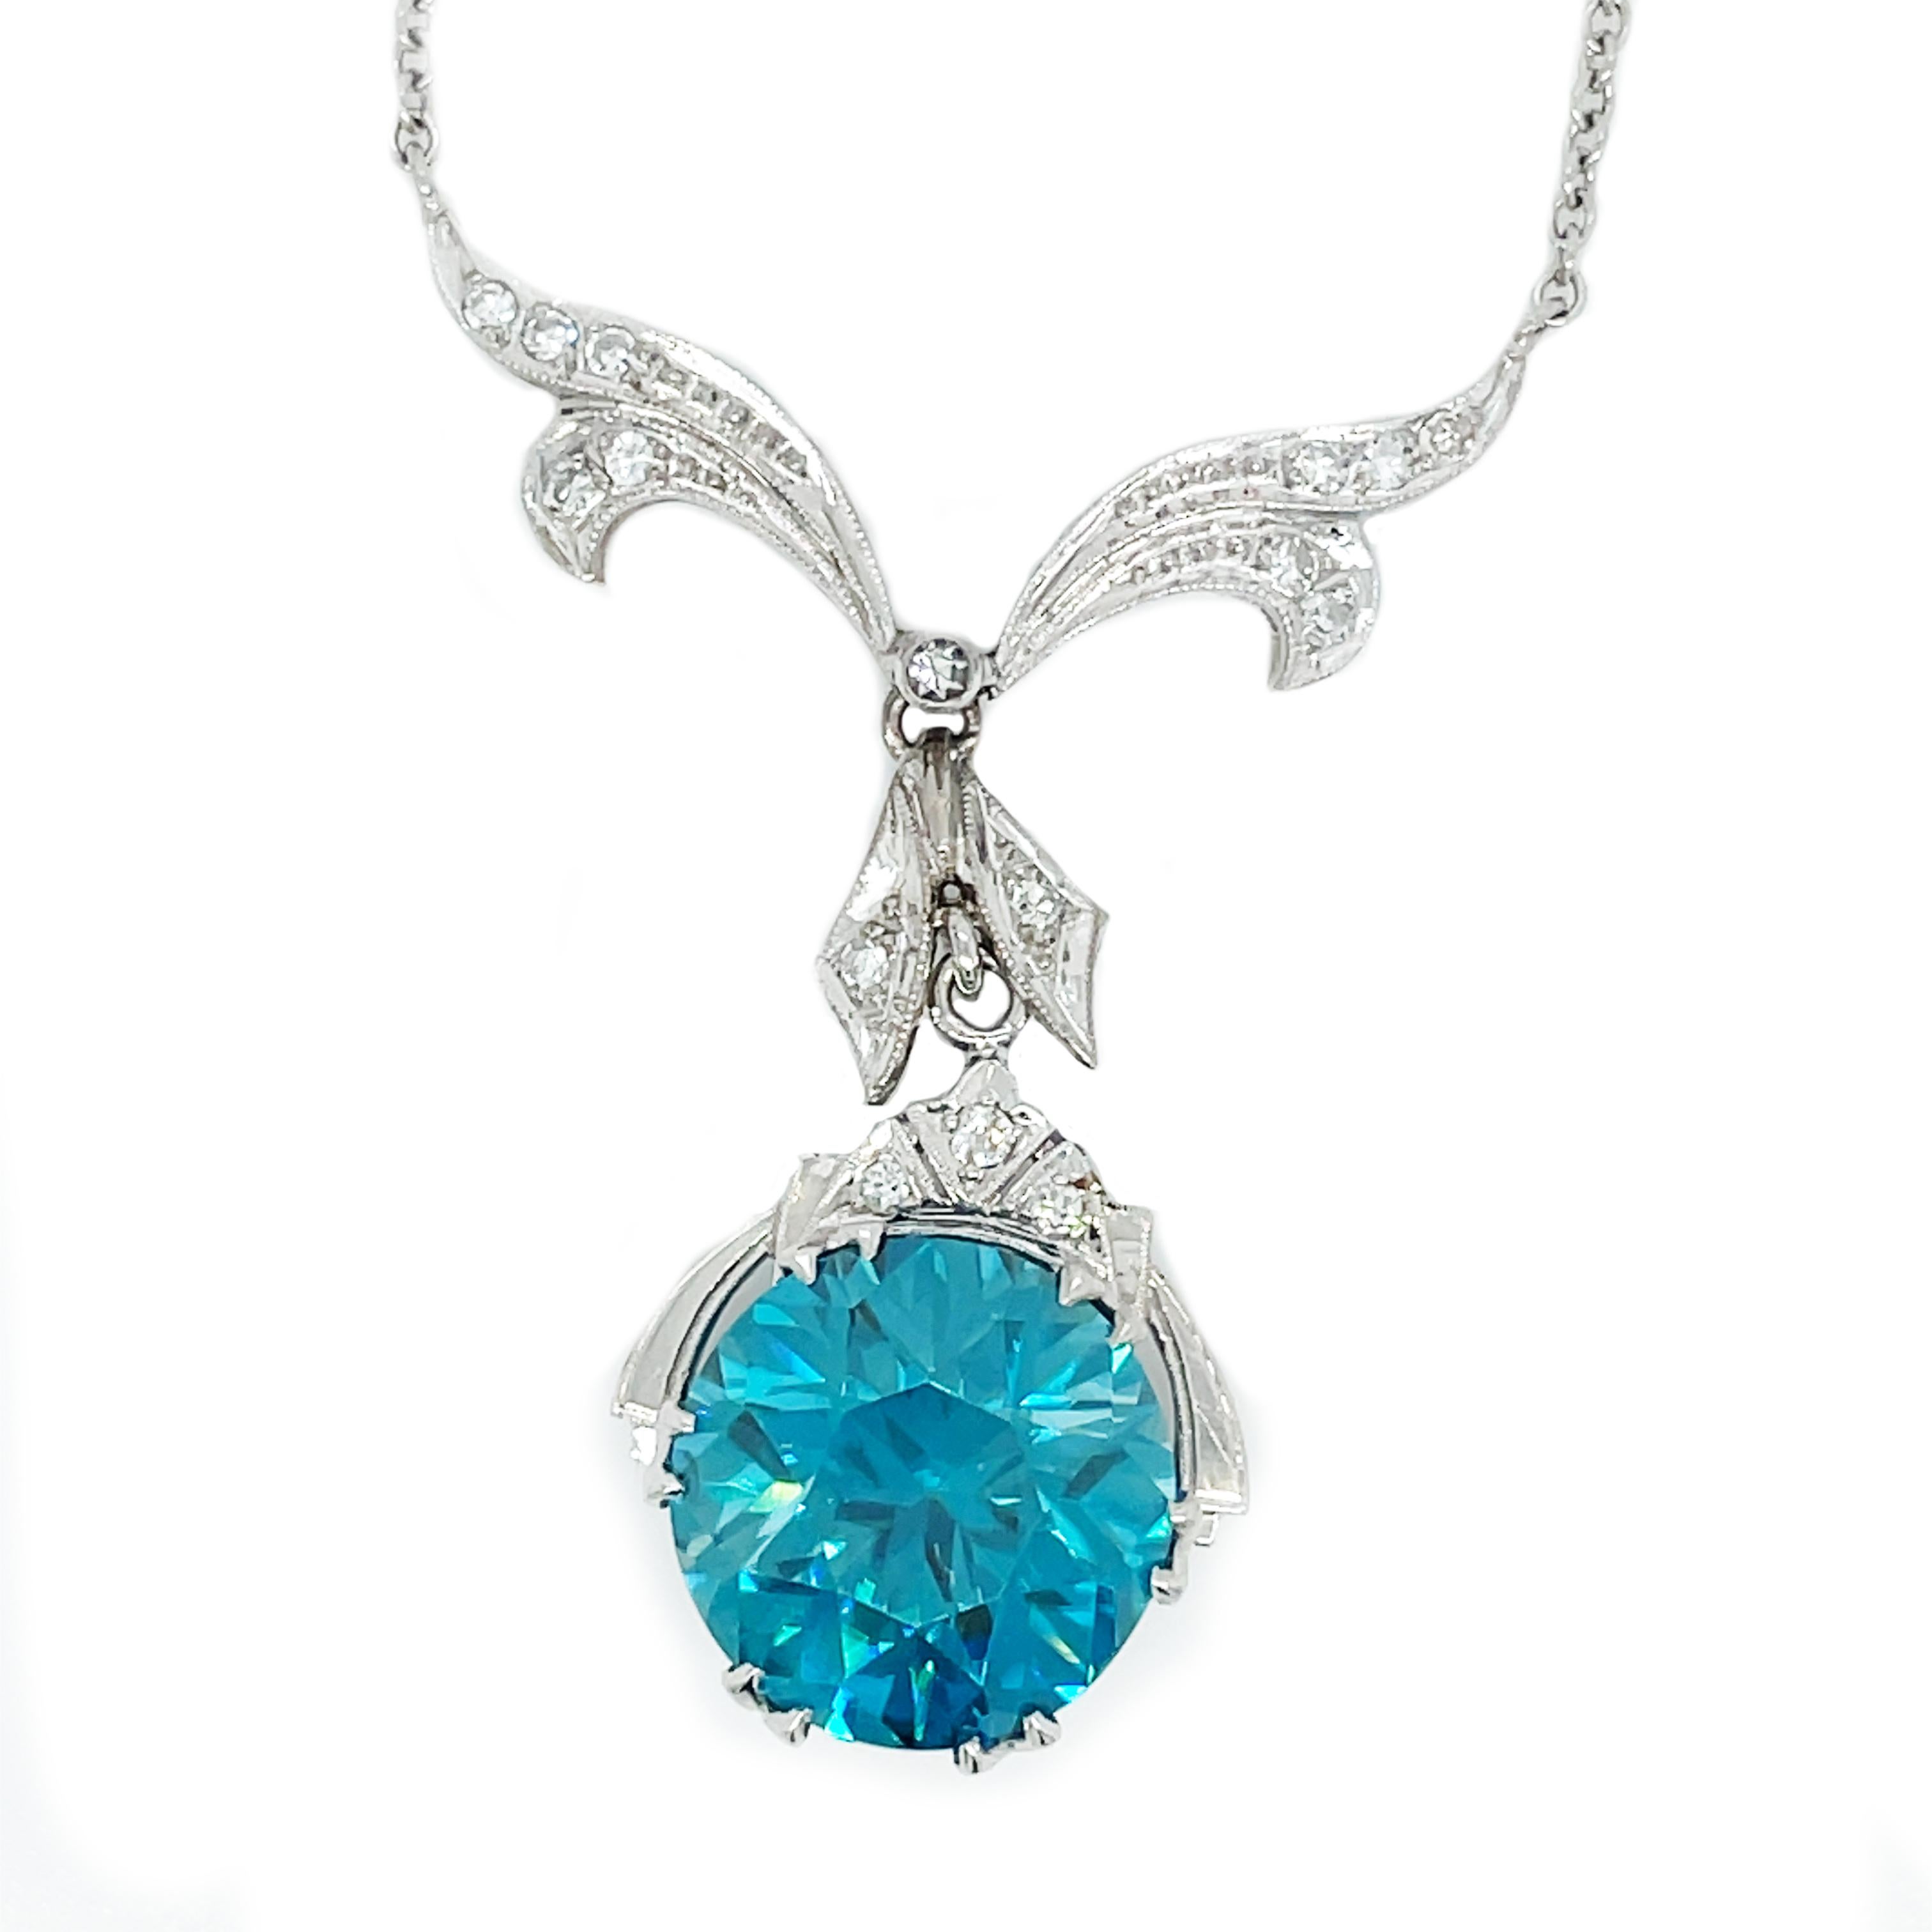 Diese Art Deco-Halskette besticht durch einen spektakulären blauen Zirkon, der mit einer wunderschönen diamantbesetzten Schleife aus Platin verbunden ist! Dieses bezaubernde Schmuckstück wird Sie umhauen! Ein wunderschöner und beeindruckender runder